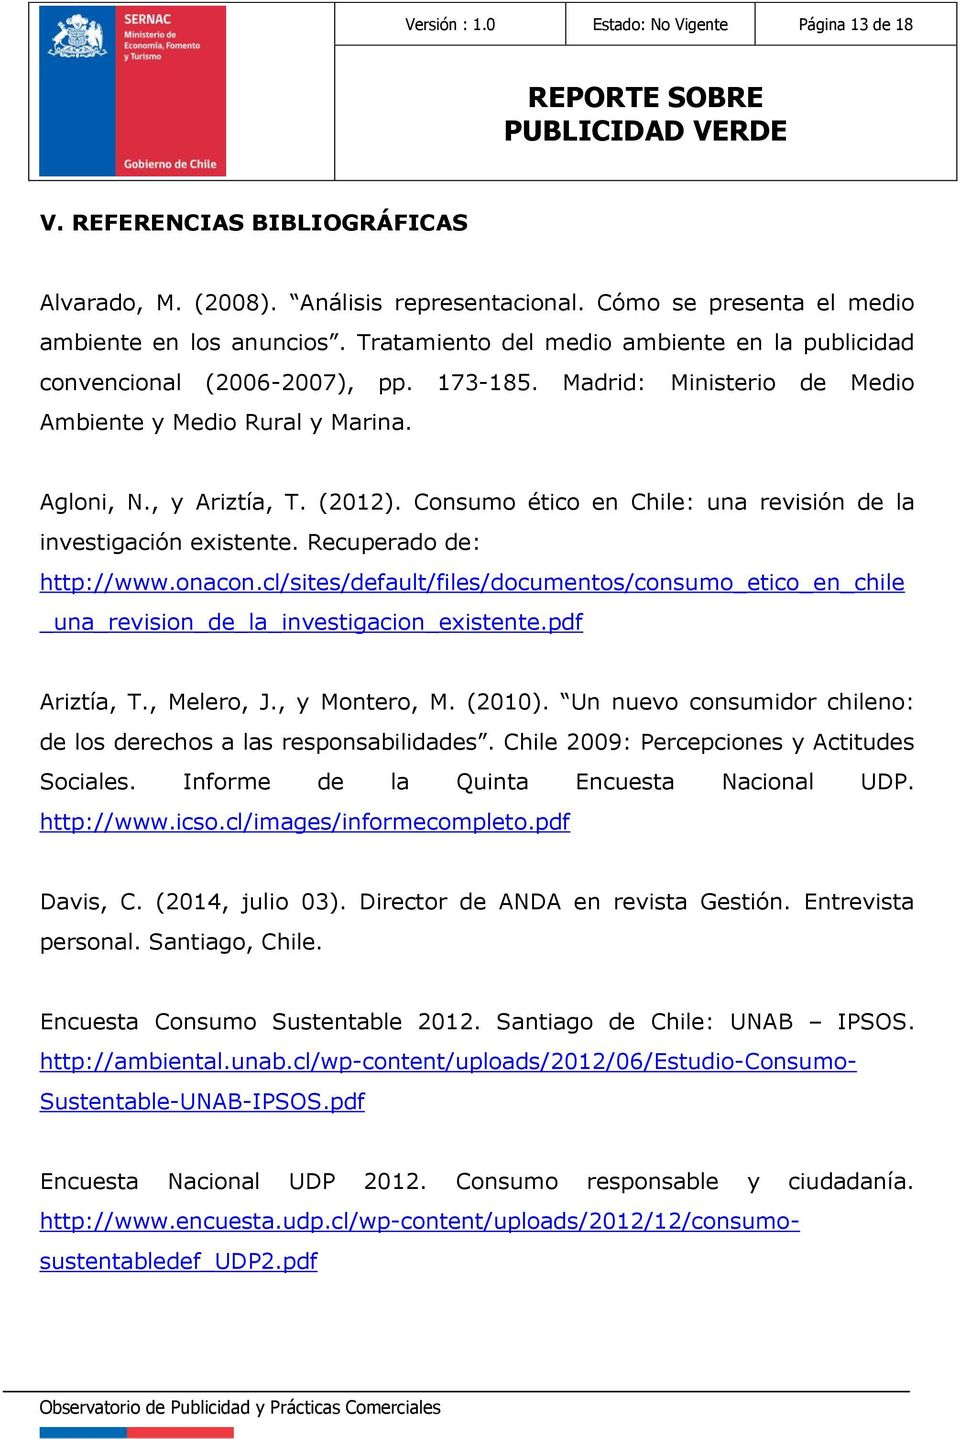 Consumo ético en Chile: una revisión de la investigación existente. Recuperado de: http://www.onacon.